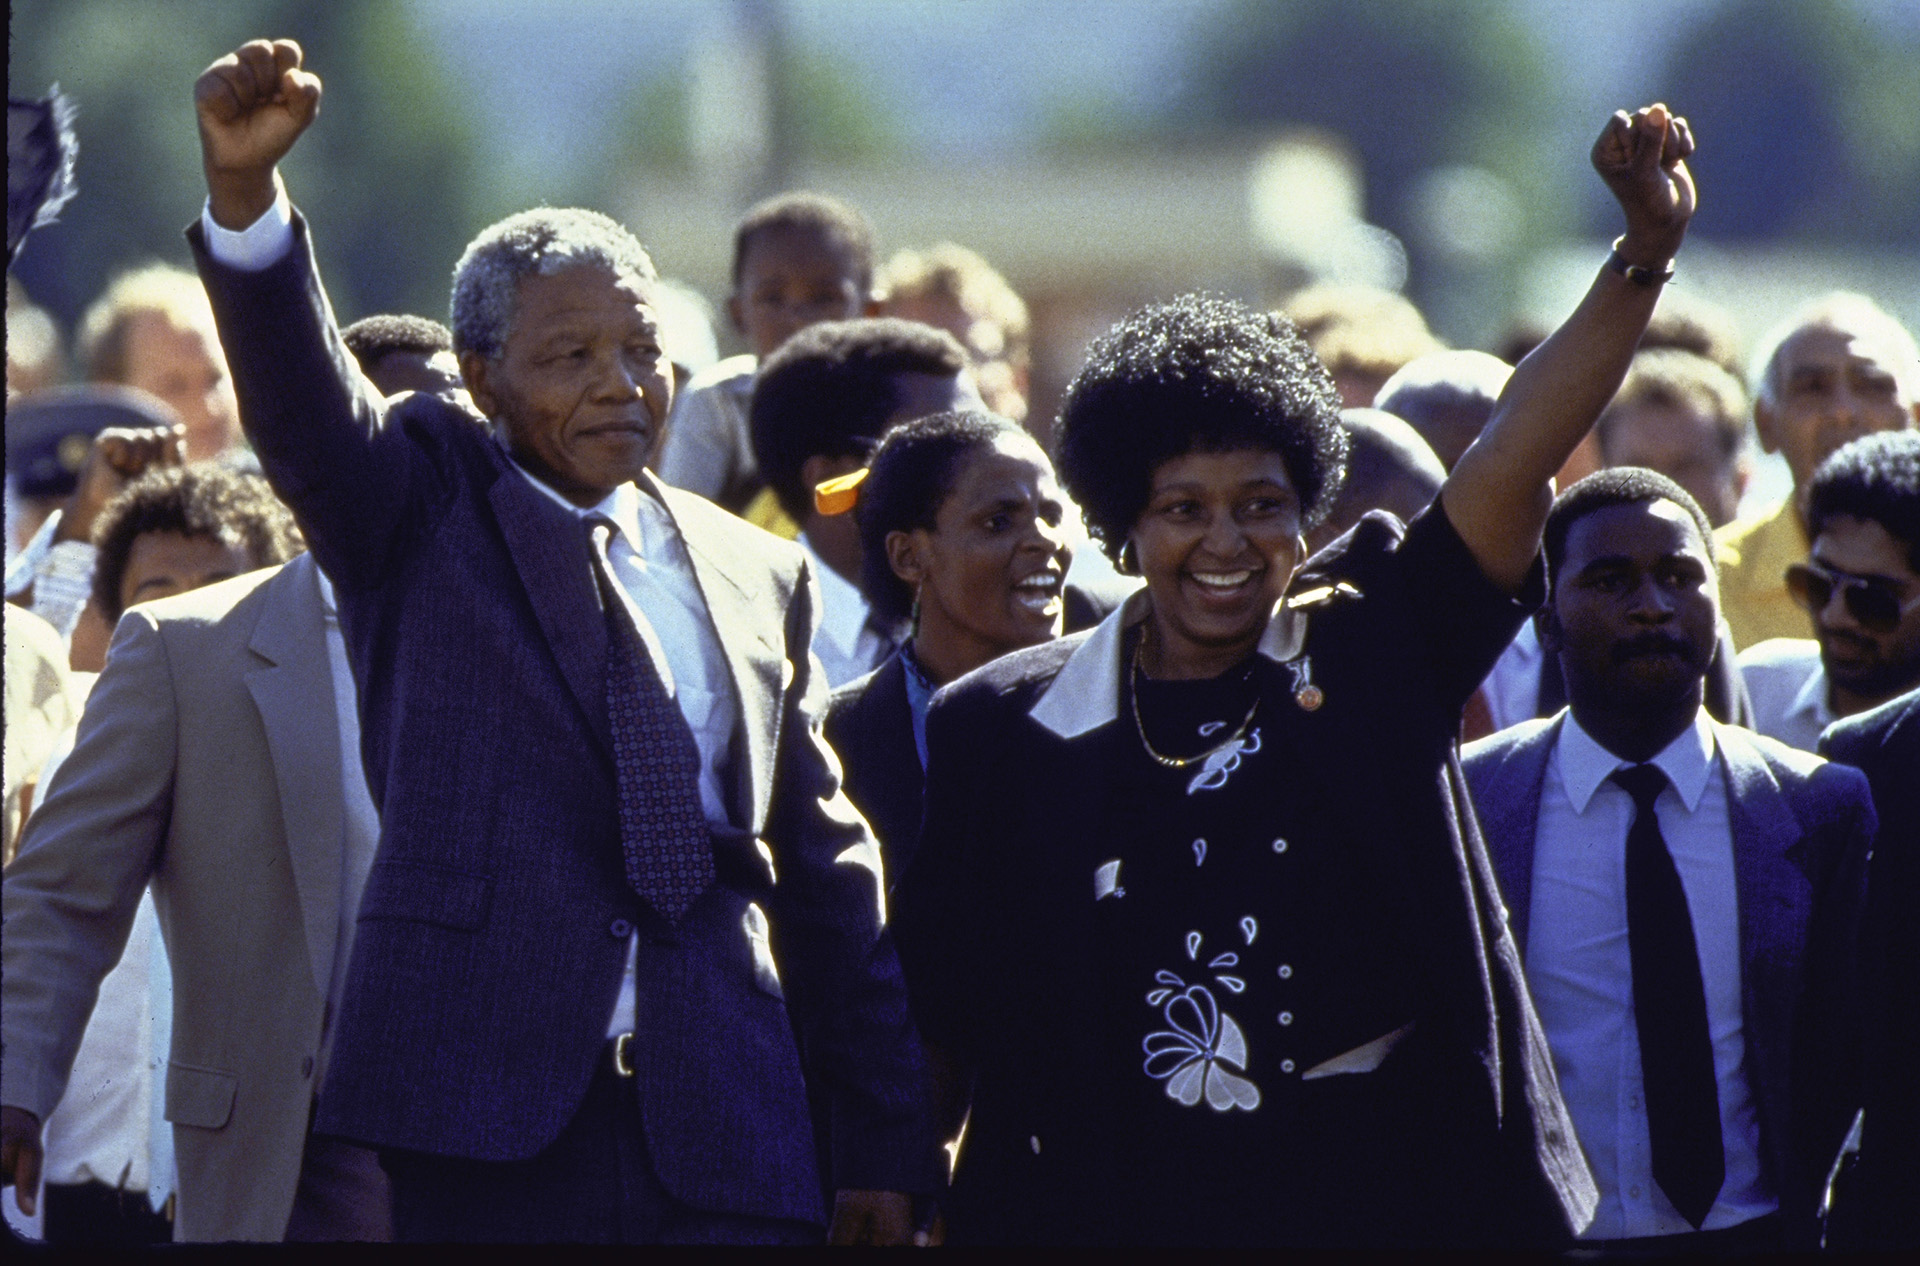 27 años en celdas húmedas, sometido a trabajos forzados y aislado del mundo: el día que Mandela recuperó la libertad